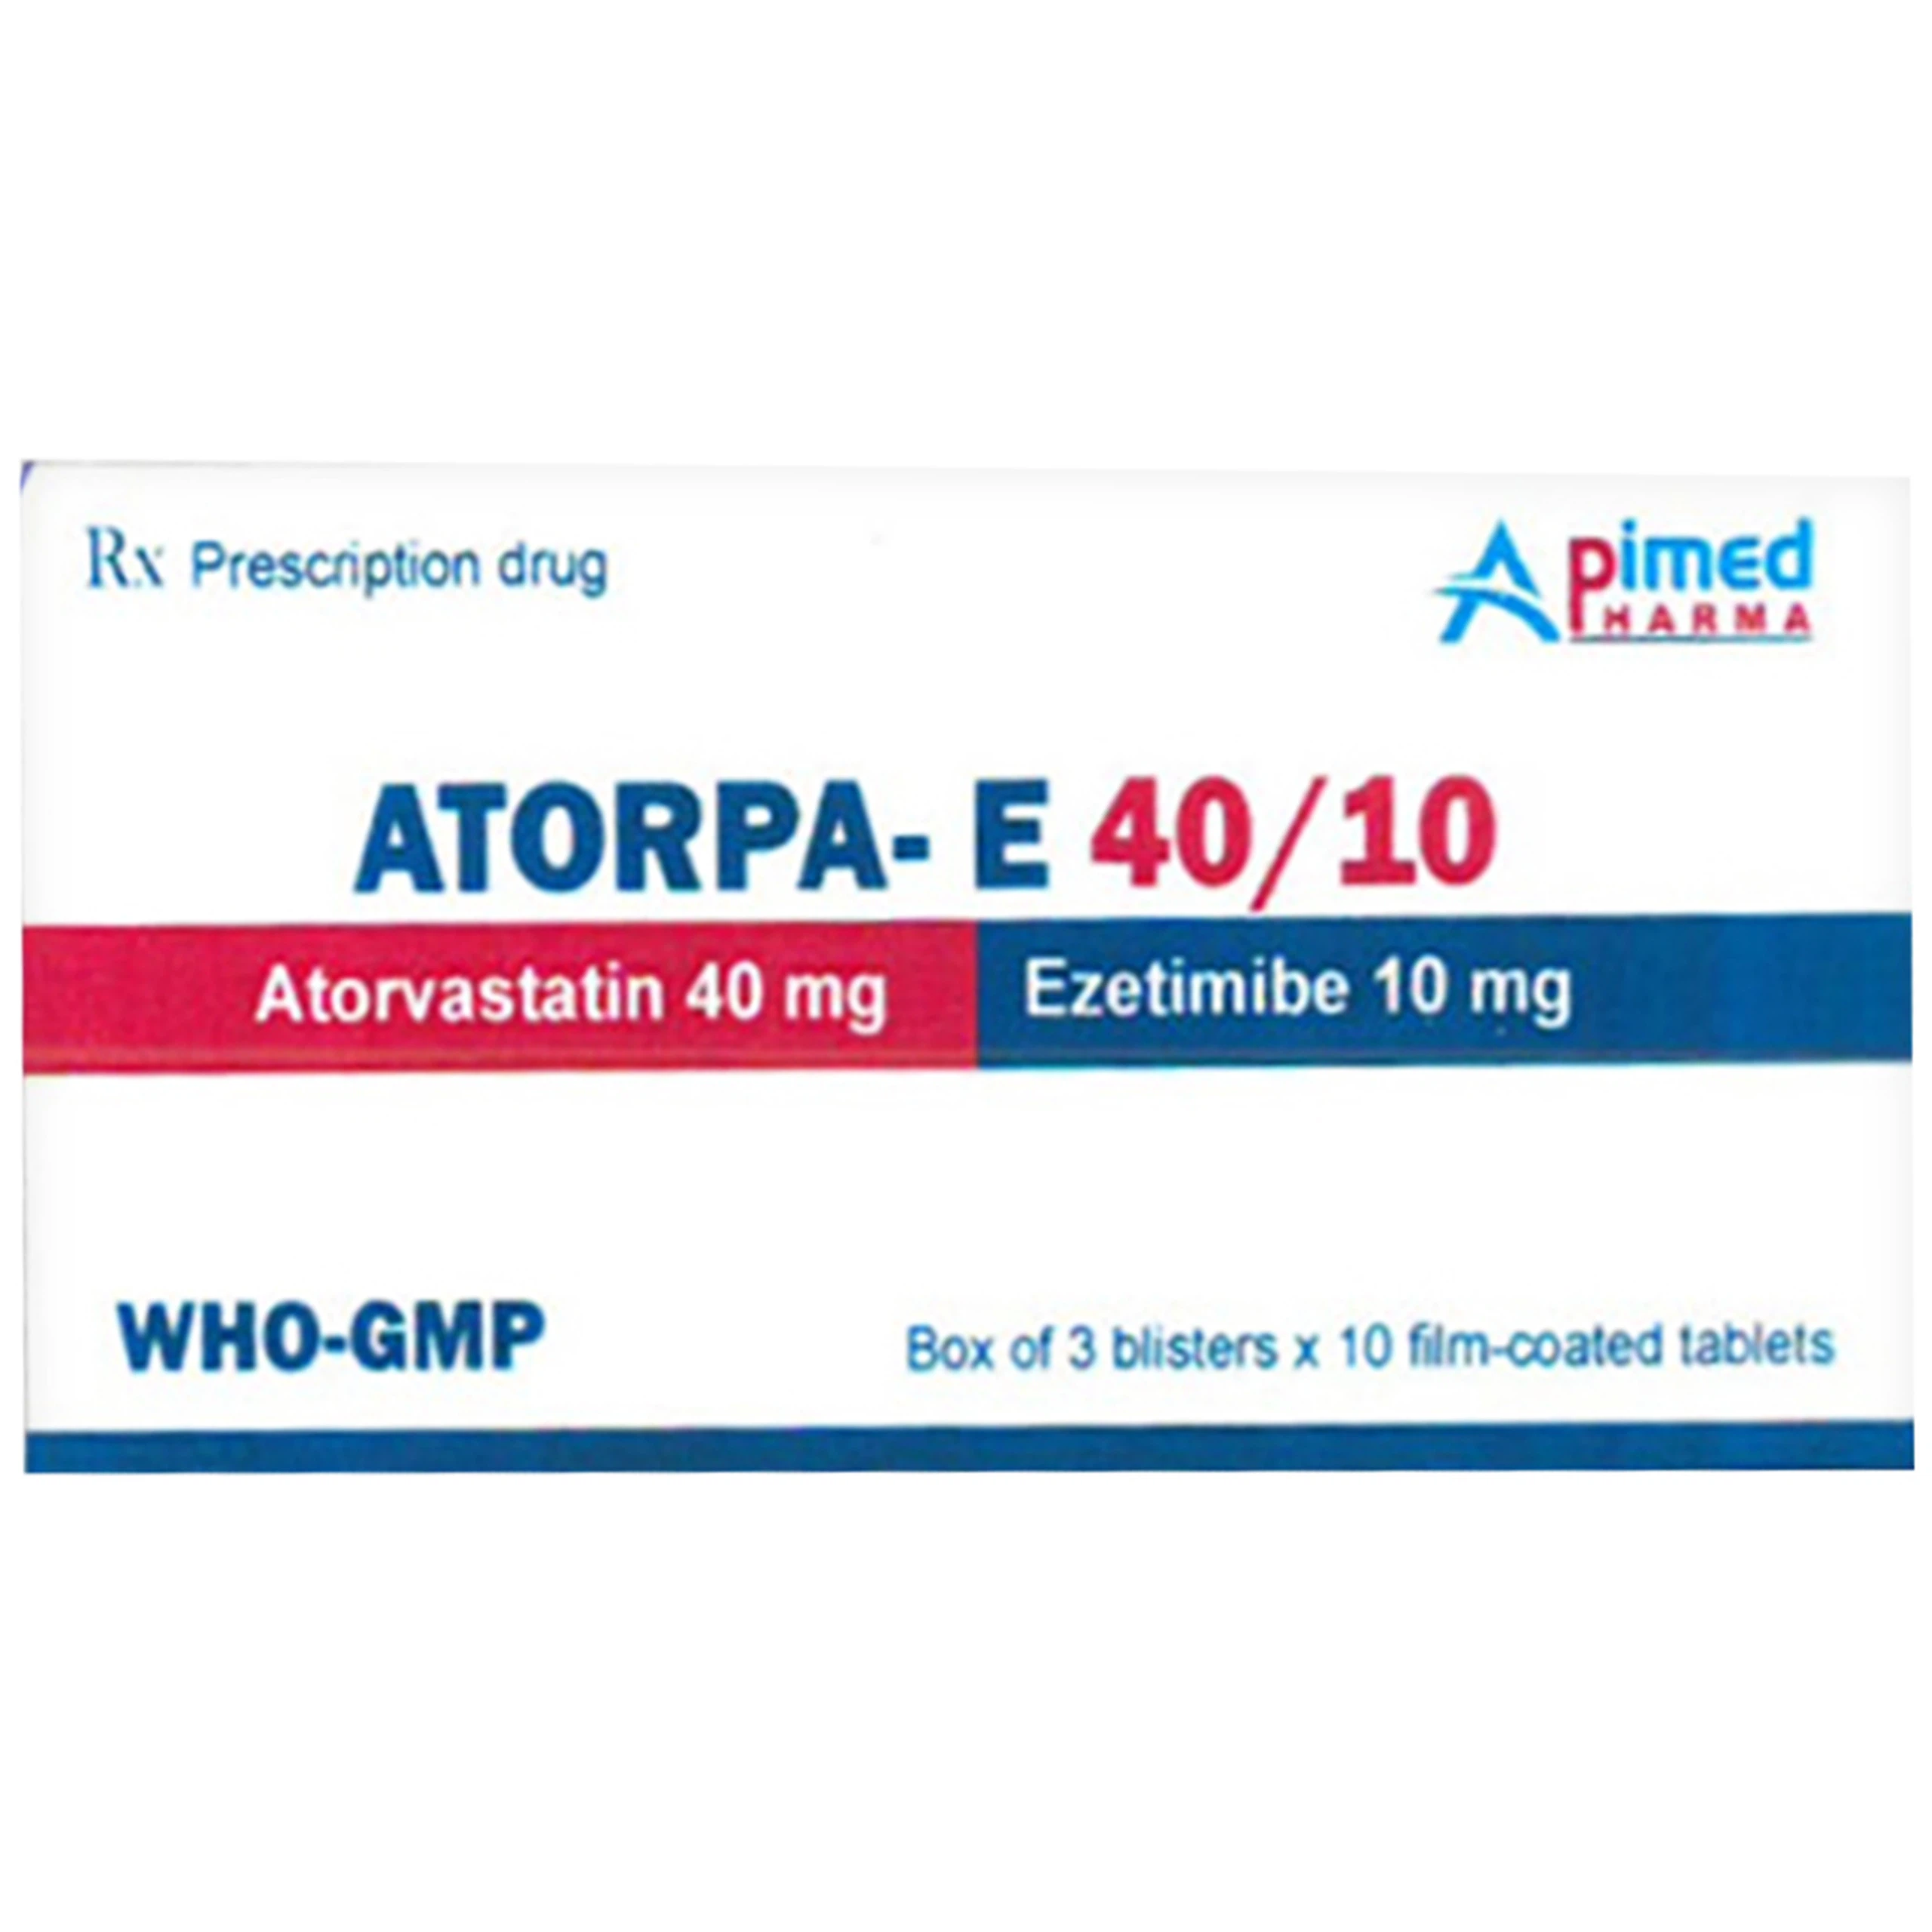 Thuốc Atorpa-E 40/10 Apimed phòng ngừa bệnh tim mạch và tăng cholesterol máu (3 vỉ x 10 viên)